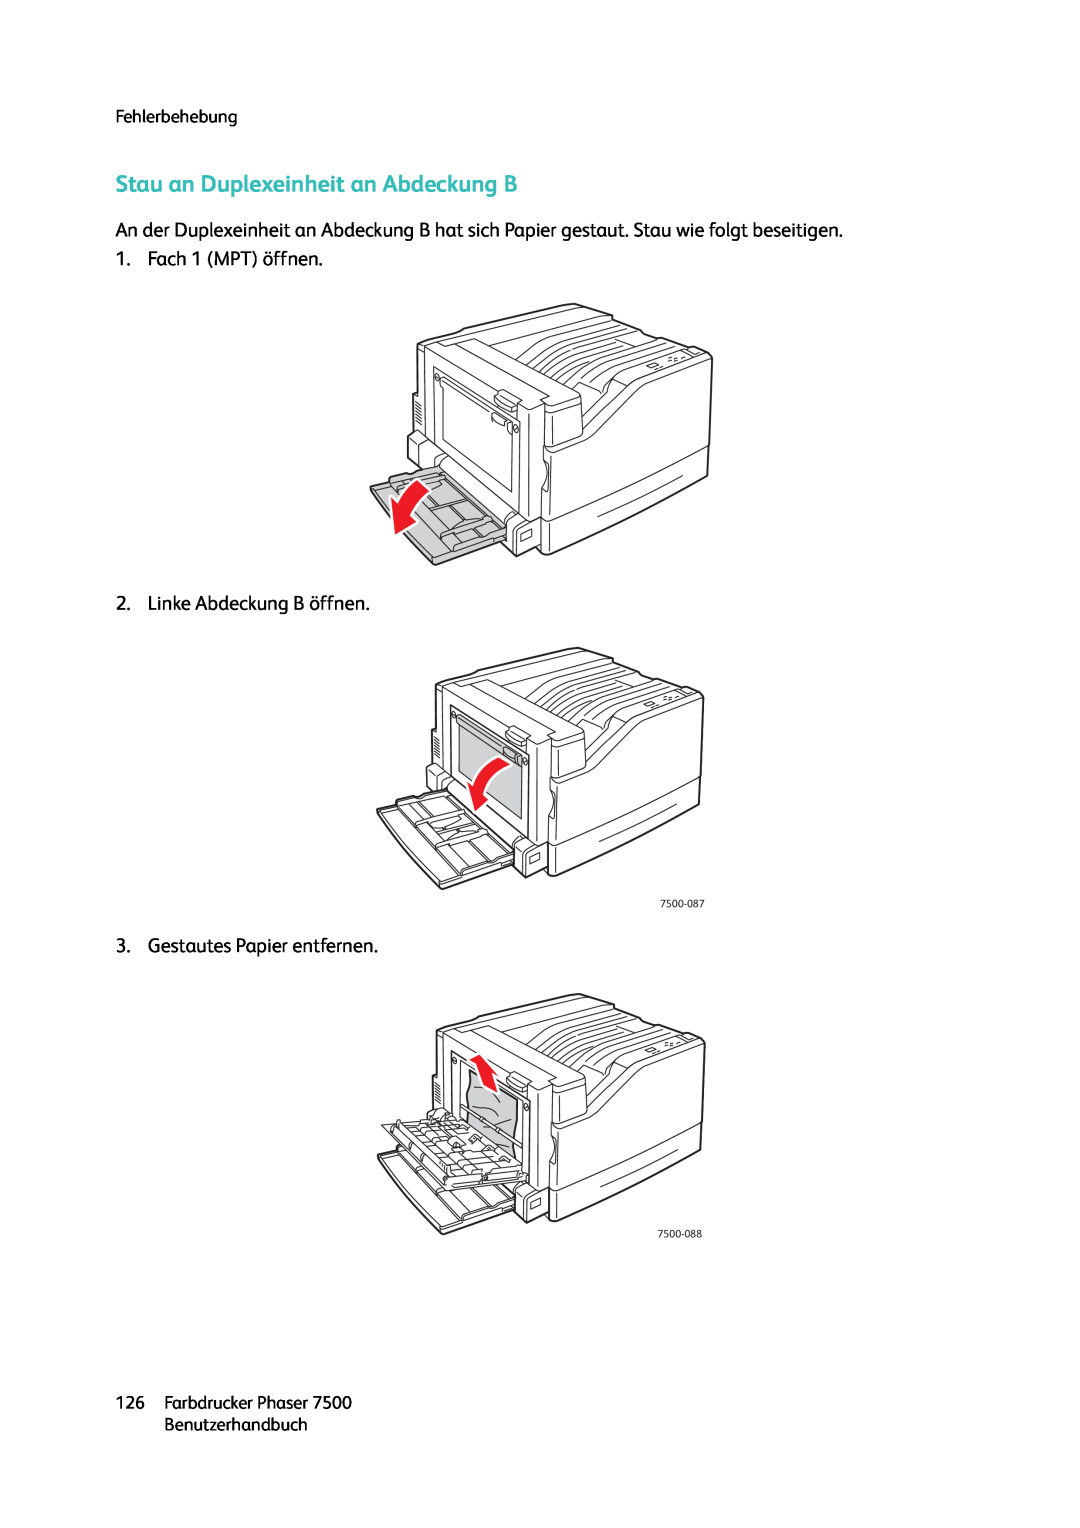 Xerox 7500 color printer manual Stau an Duplexeinheit an Abdeckung B, Linke Abdeckung B öffnen, Gestautes Papier entfernen 